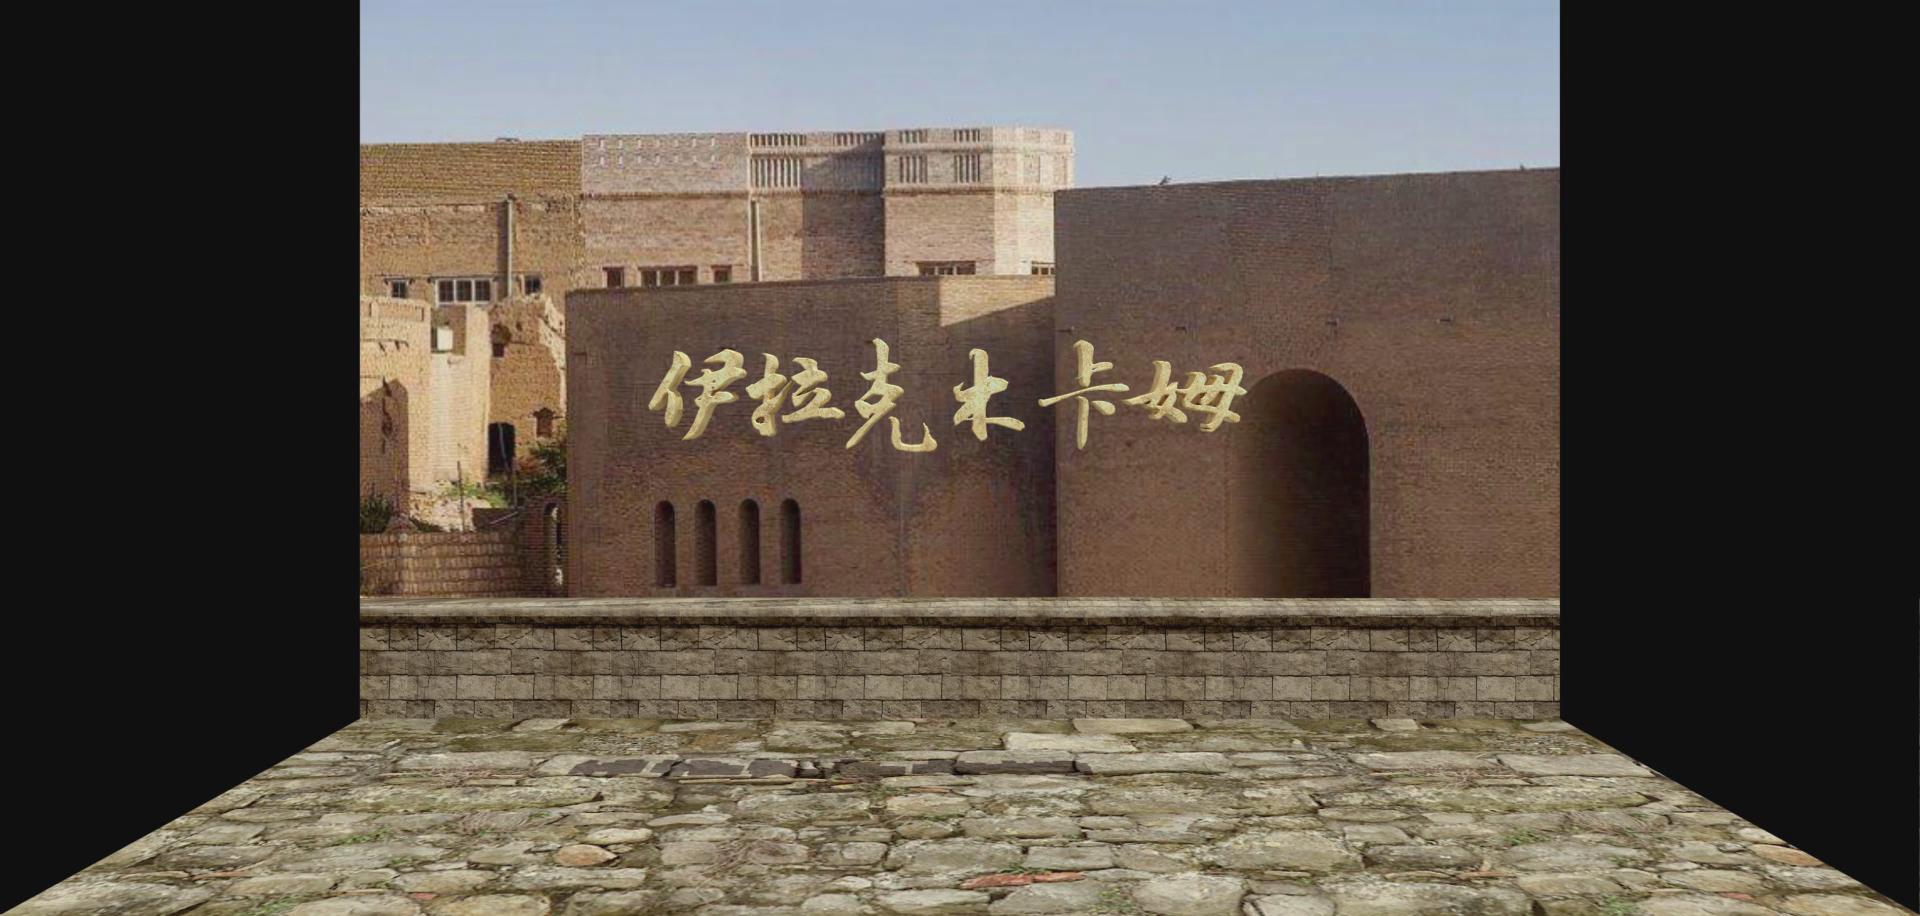 上海大世界伊拉克木卡姆折幕投影三维影片